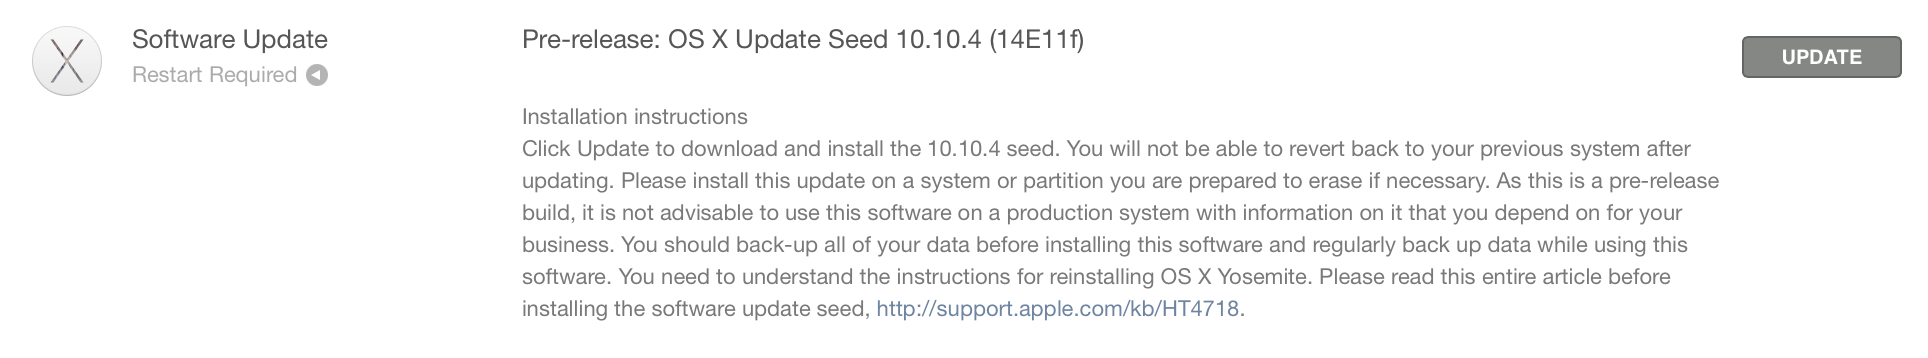 OS X 10.10.4 Beta-Build